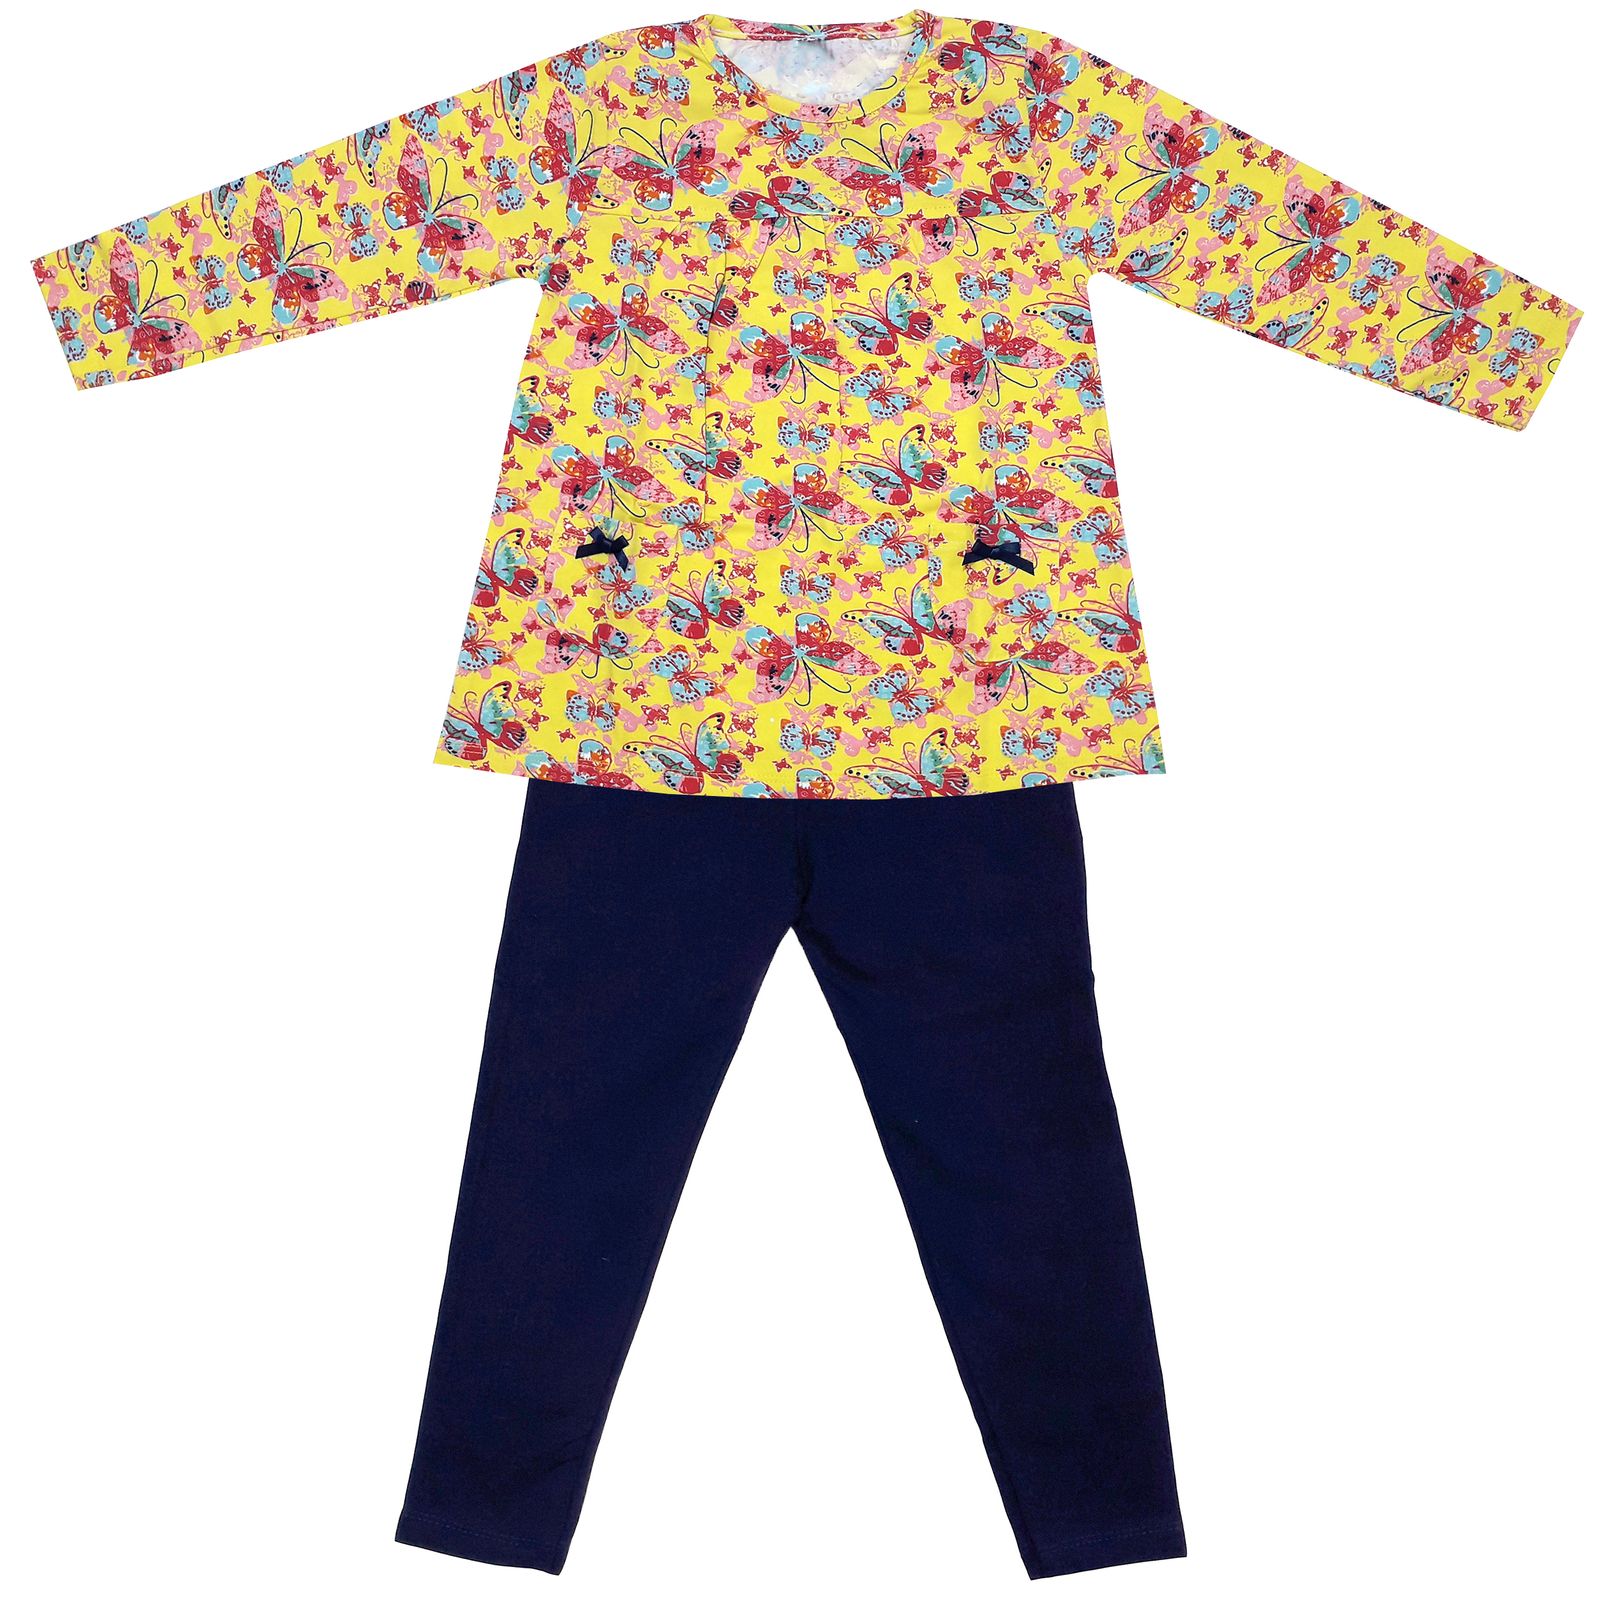 ست تی شرت و شلوار دخترانه طرح پروانه کد 3071 رنگ زرد -  - 2